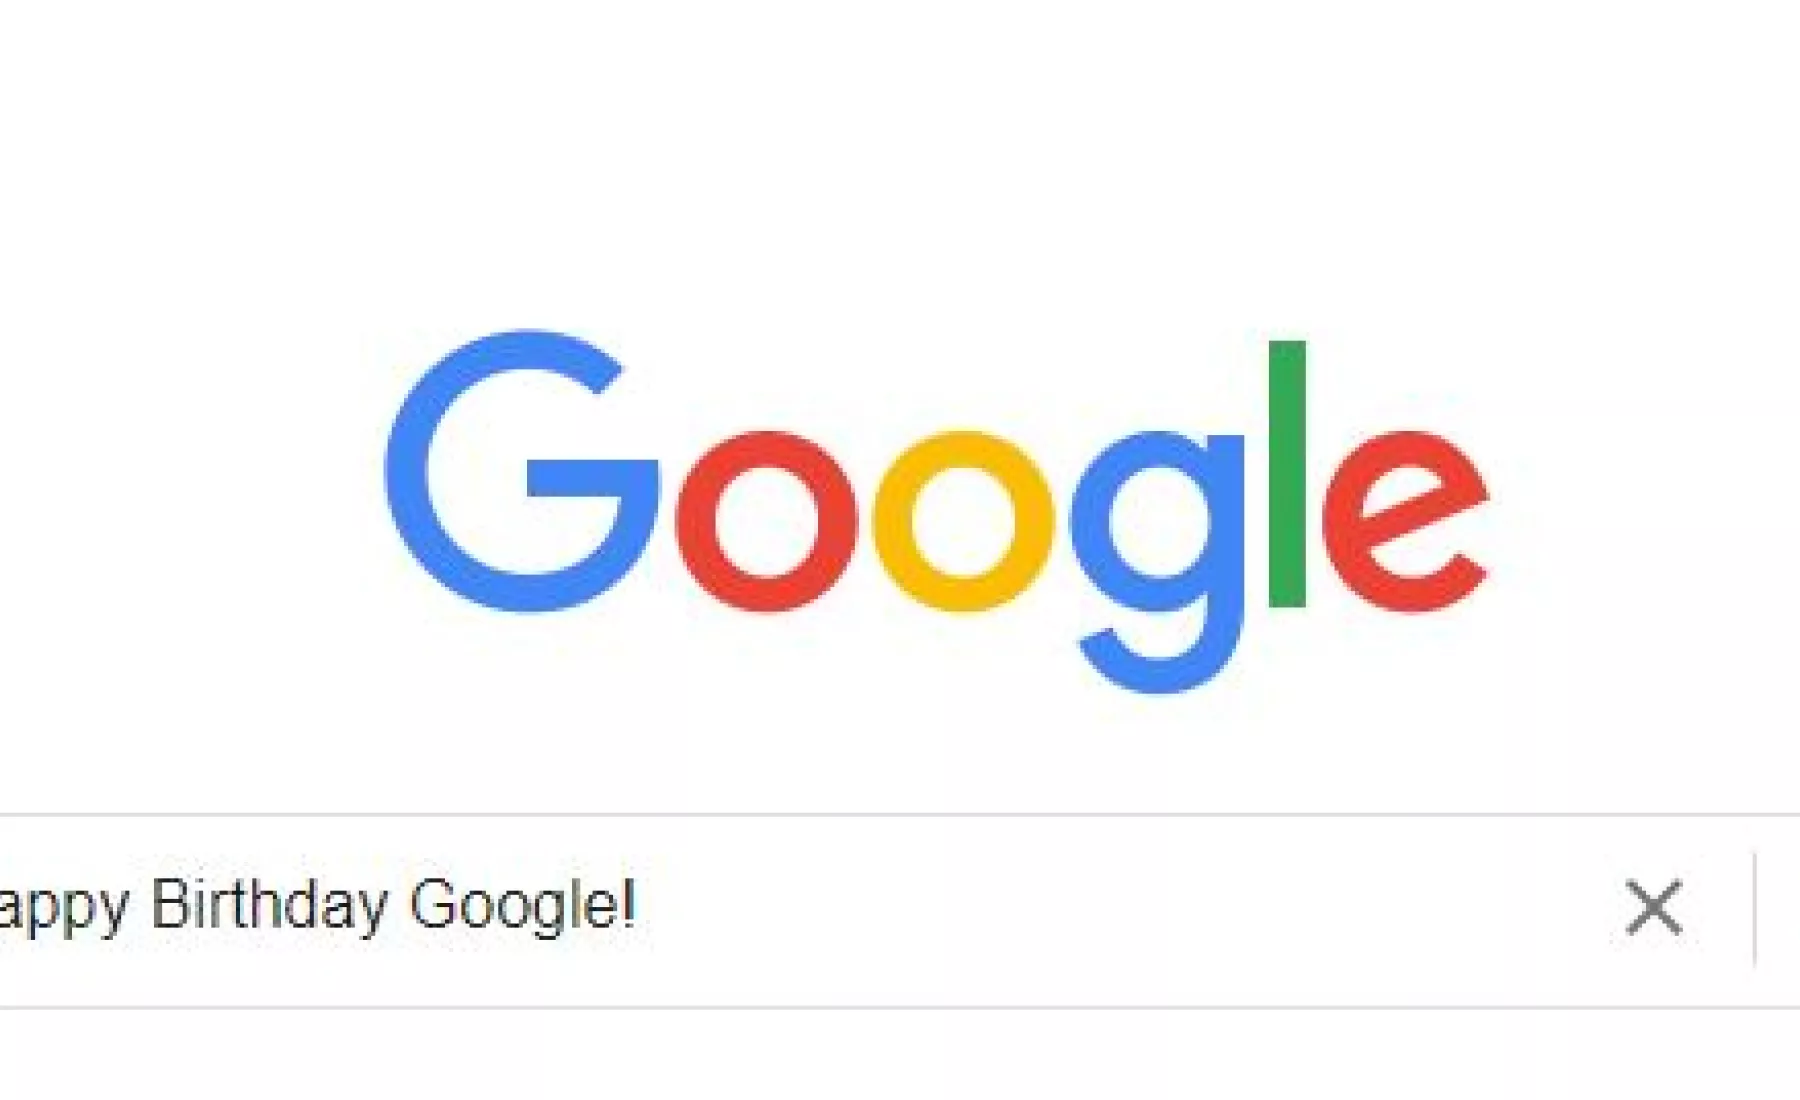 Google Suchleiste mit Happy Birthday Google!